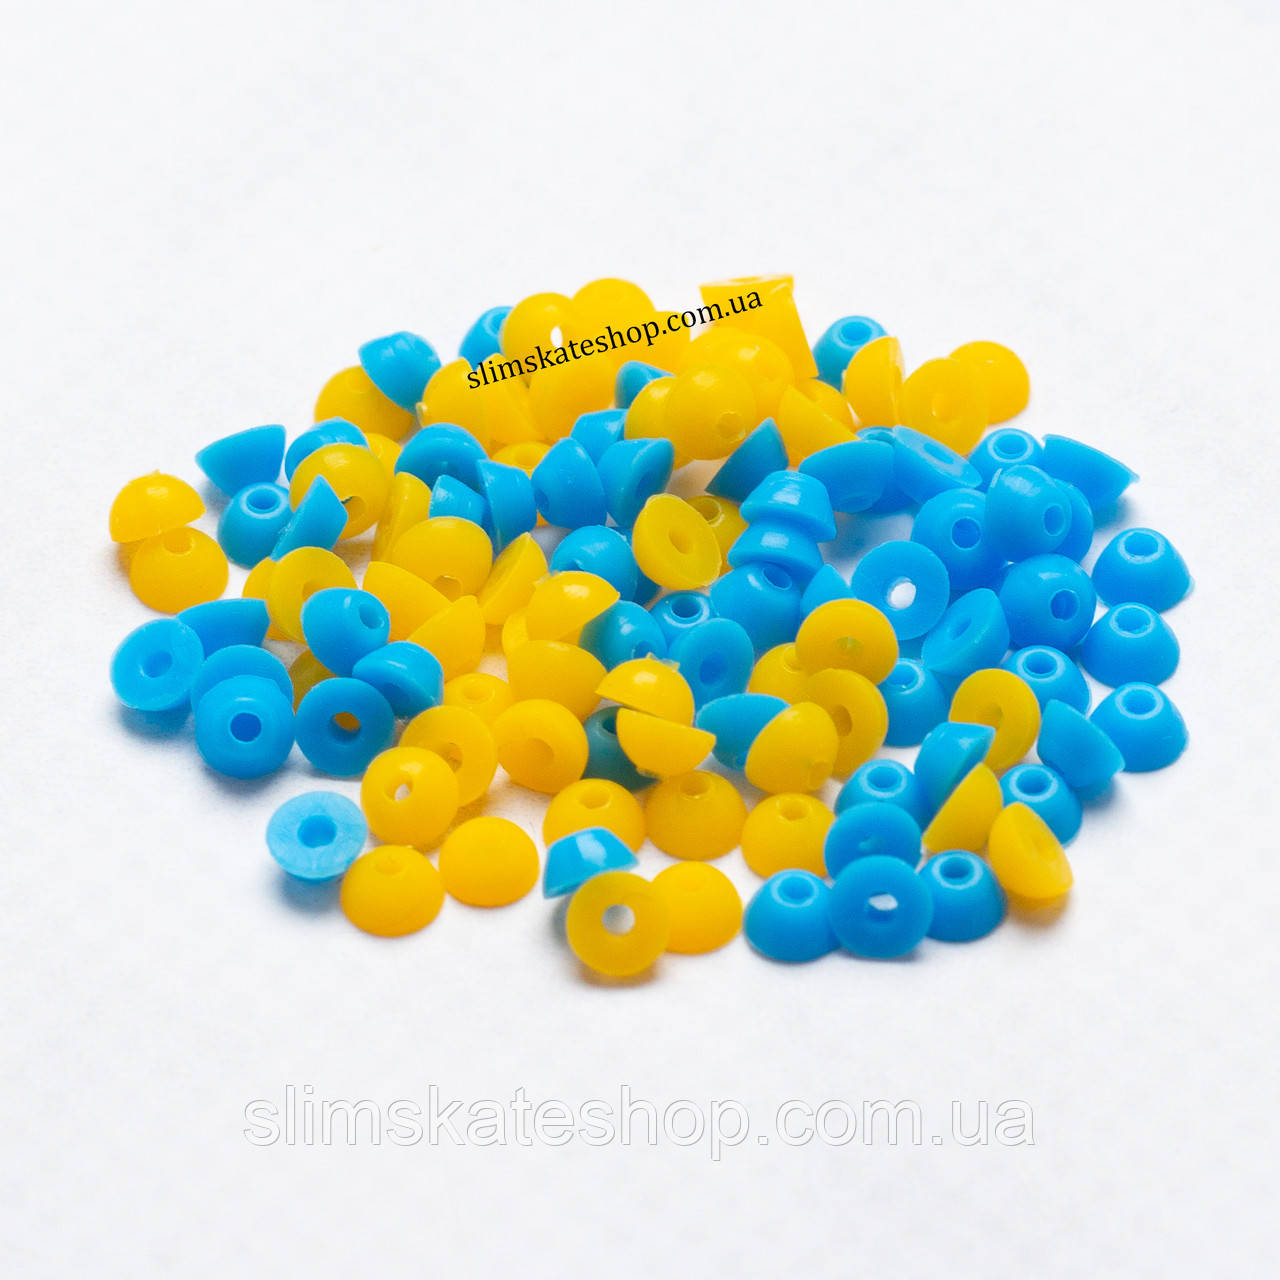 Бушинги для фінгерборду Slim Urethane Bushings Kit (жовті + блакитні, комплект 4 шт)